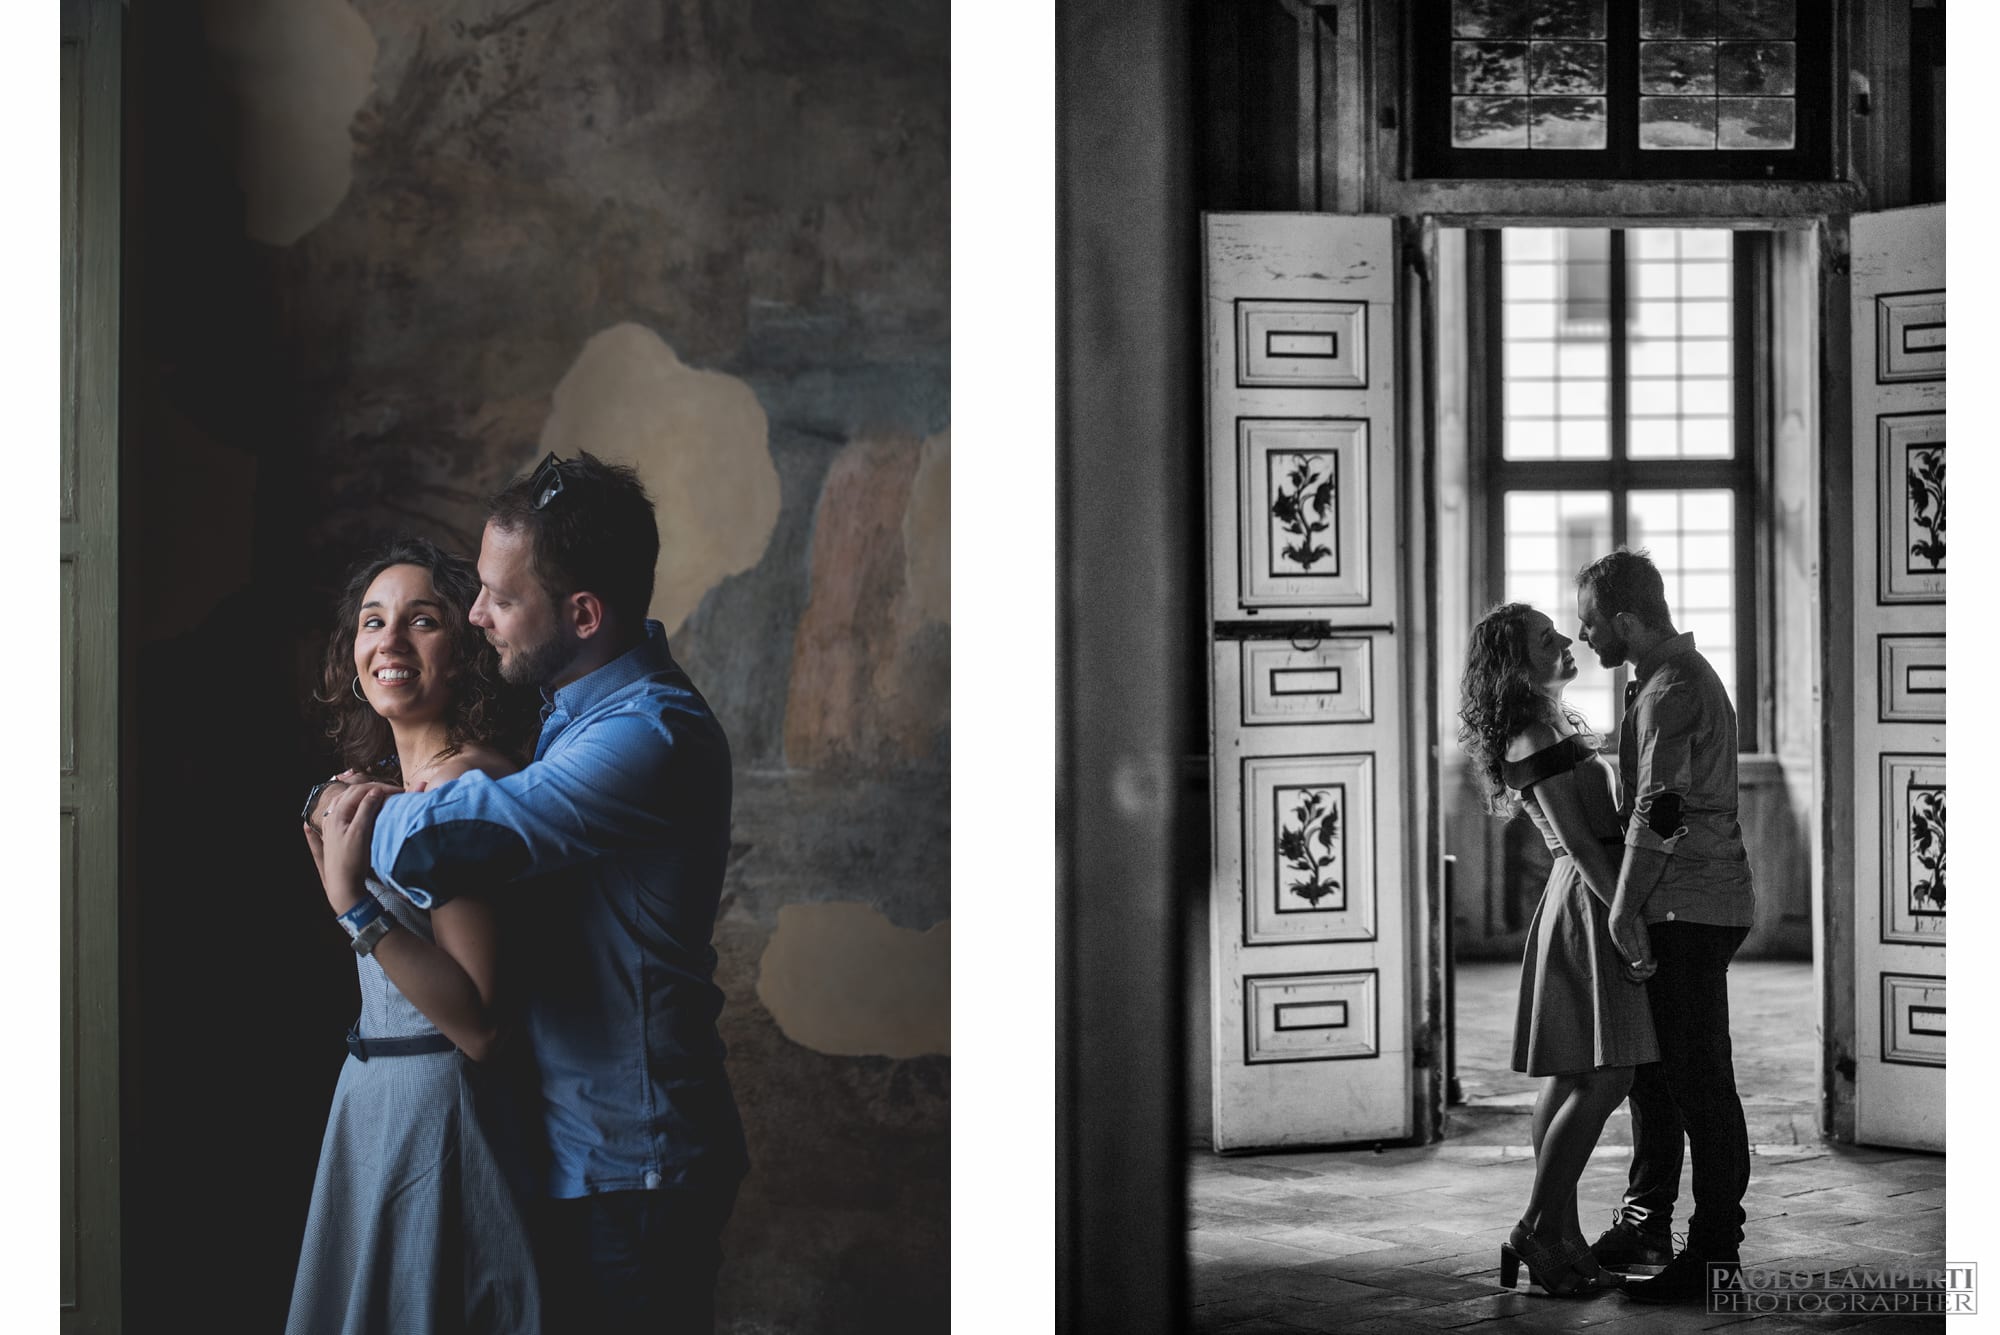 Engagement Palazzo Arese Borromeo varese saronno como milano servizio fotografico prematrimoniale ritratti intimo romantico moderno artistico creativo photographer lamperti